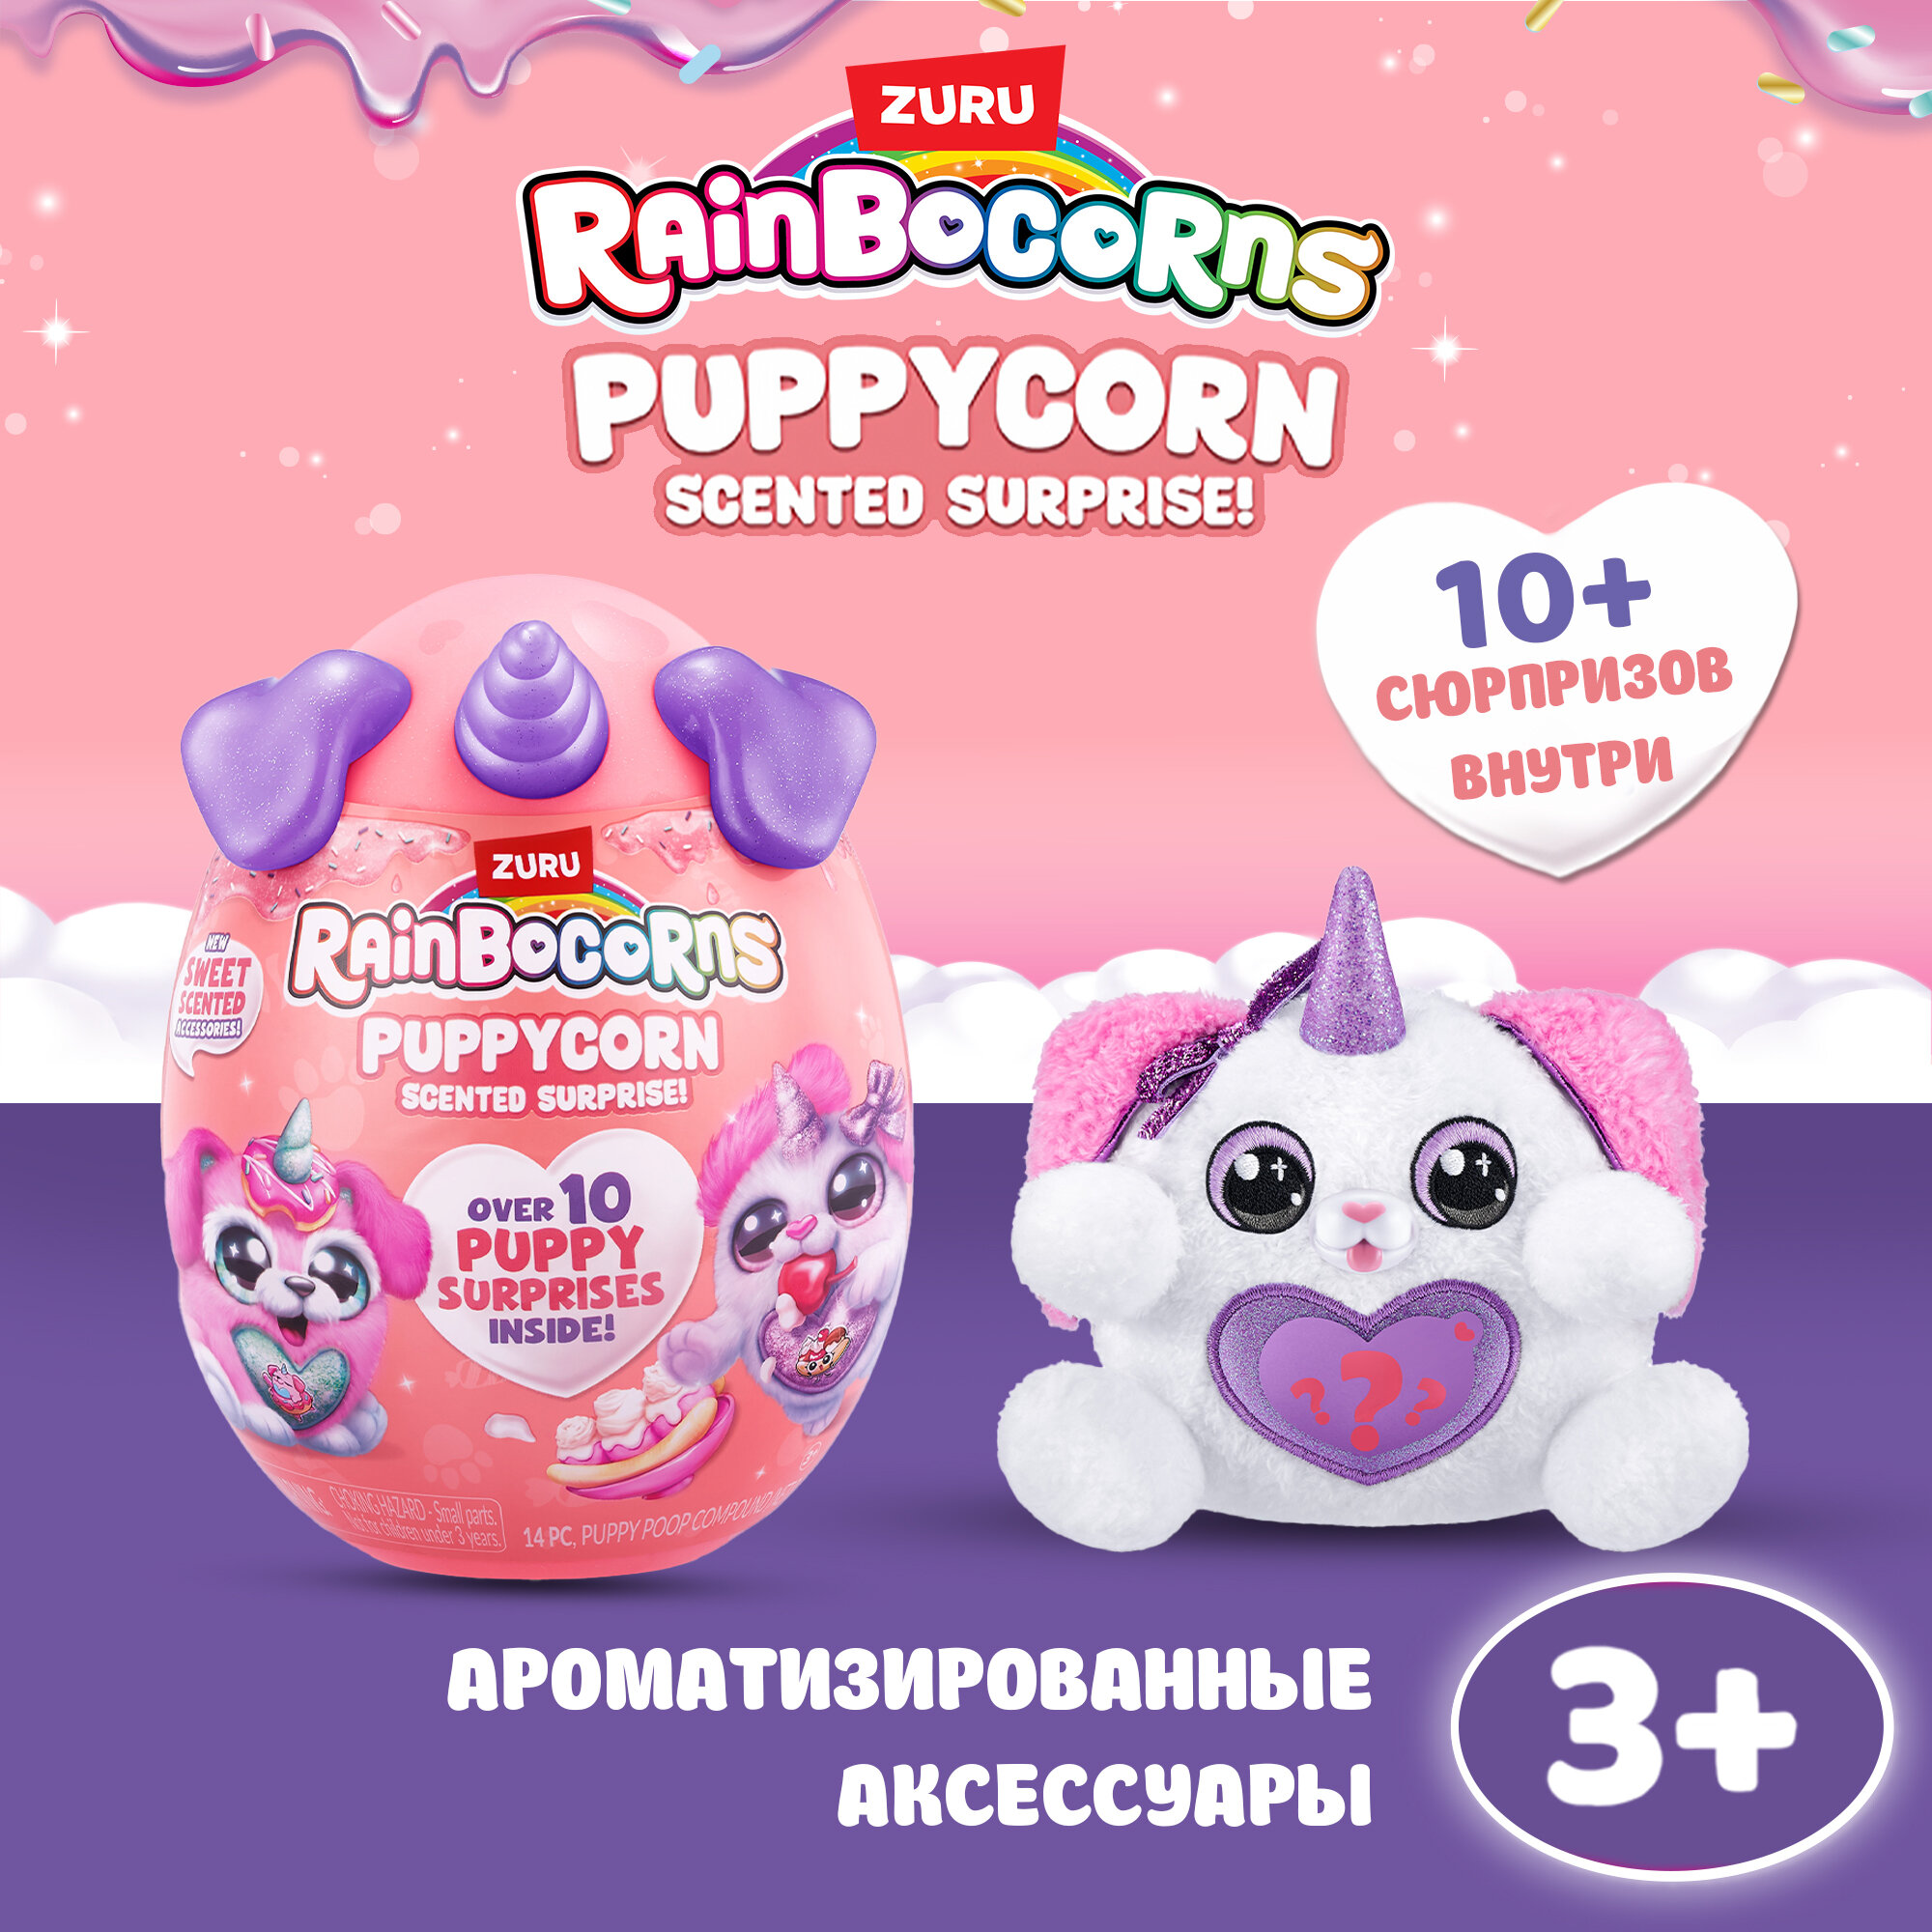 Игрушка-сюрприз ZURU RAINBOCORNS Puppycorn Scent, Плюшевый щенок с ароматизированными аксессуарами, игрушки для девочек, 9298